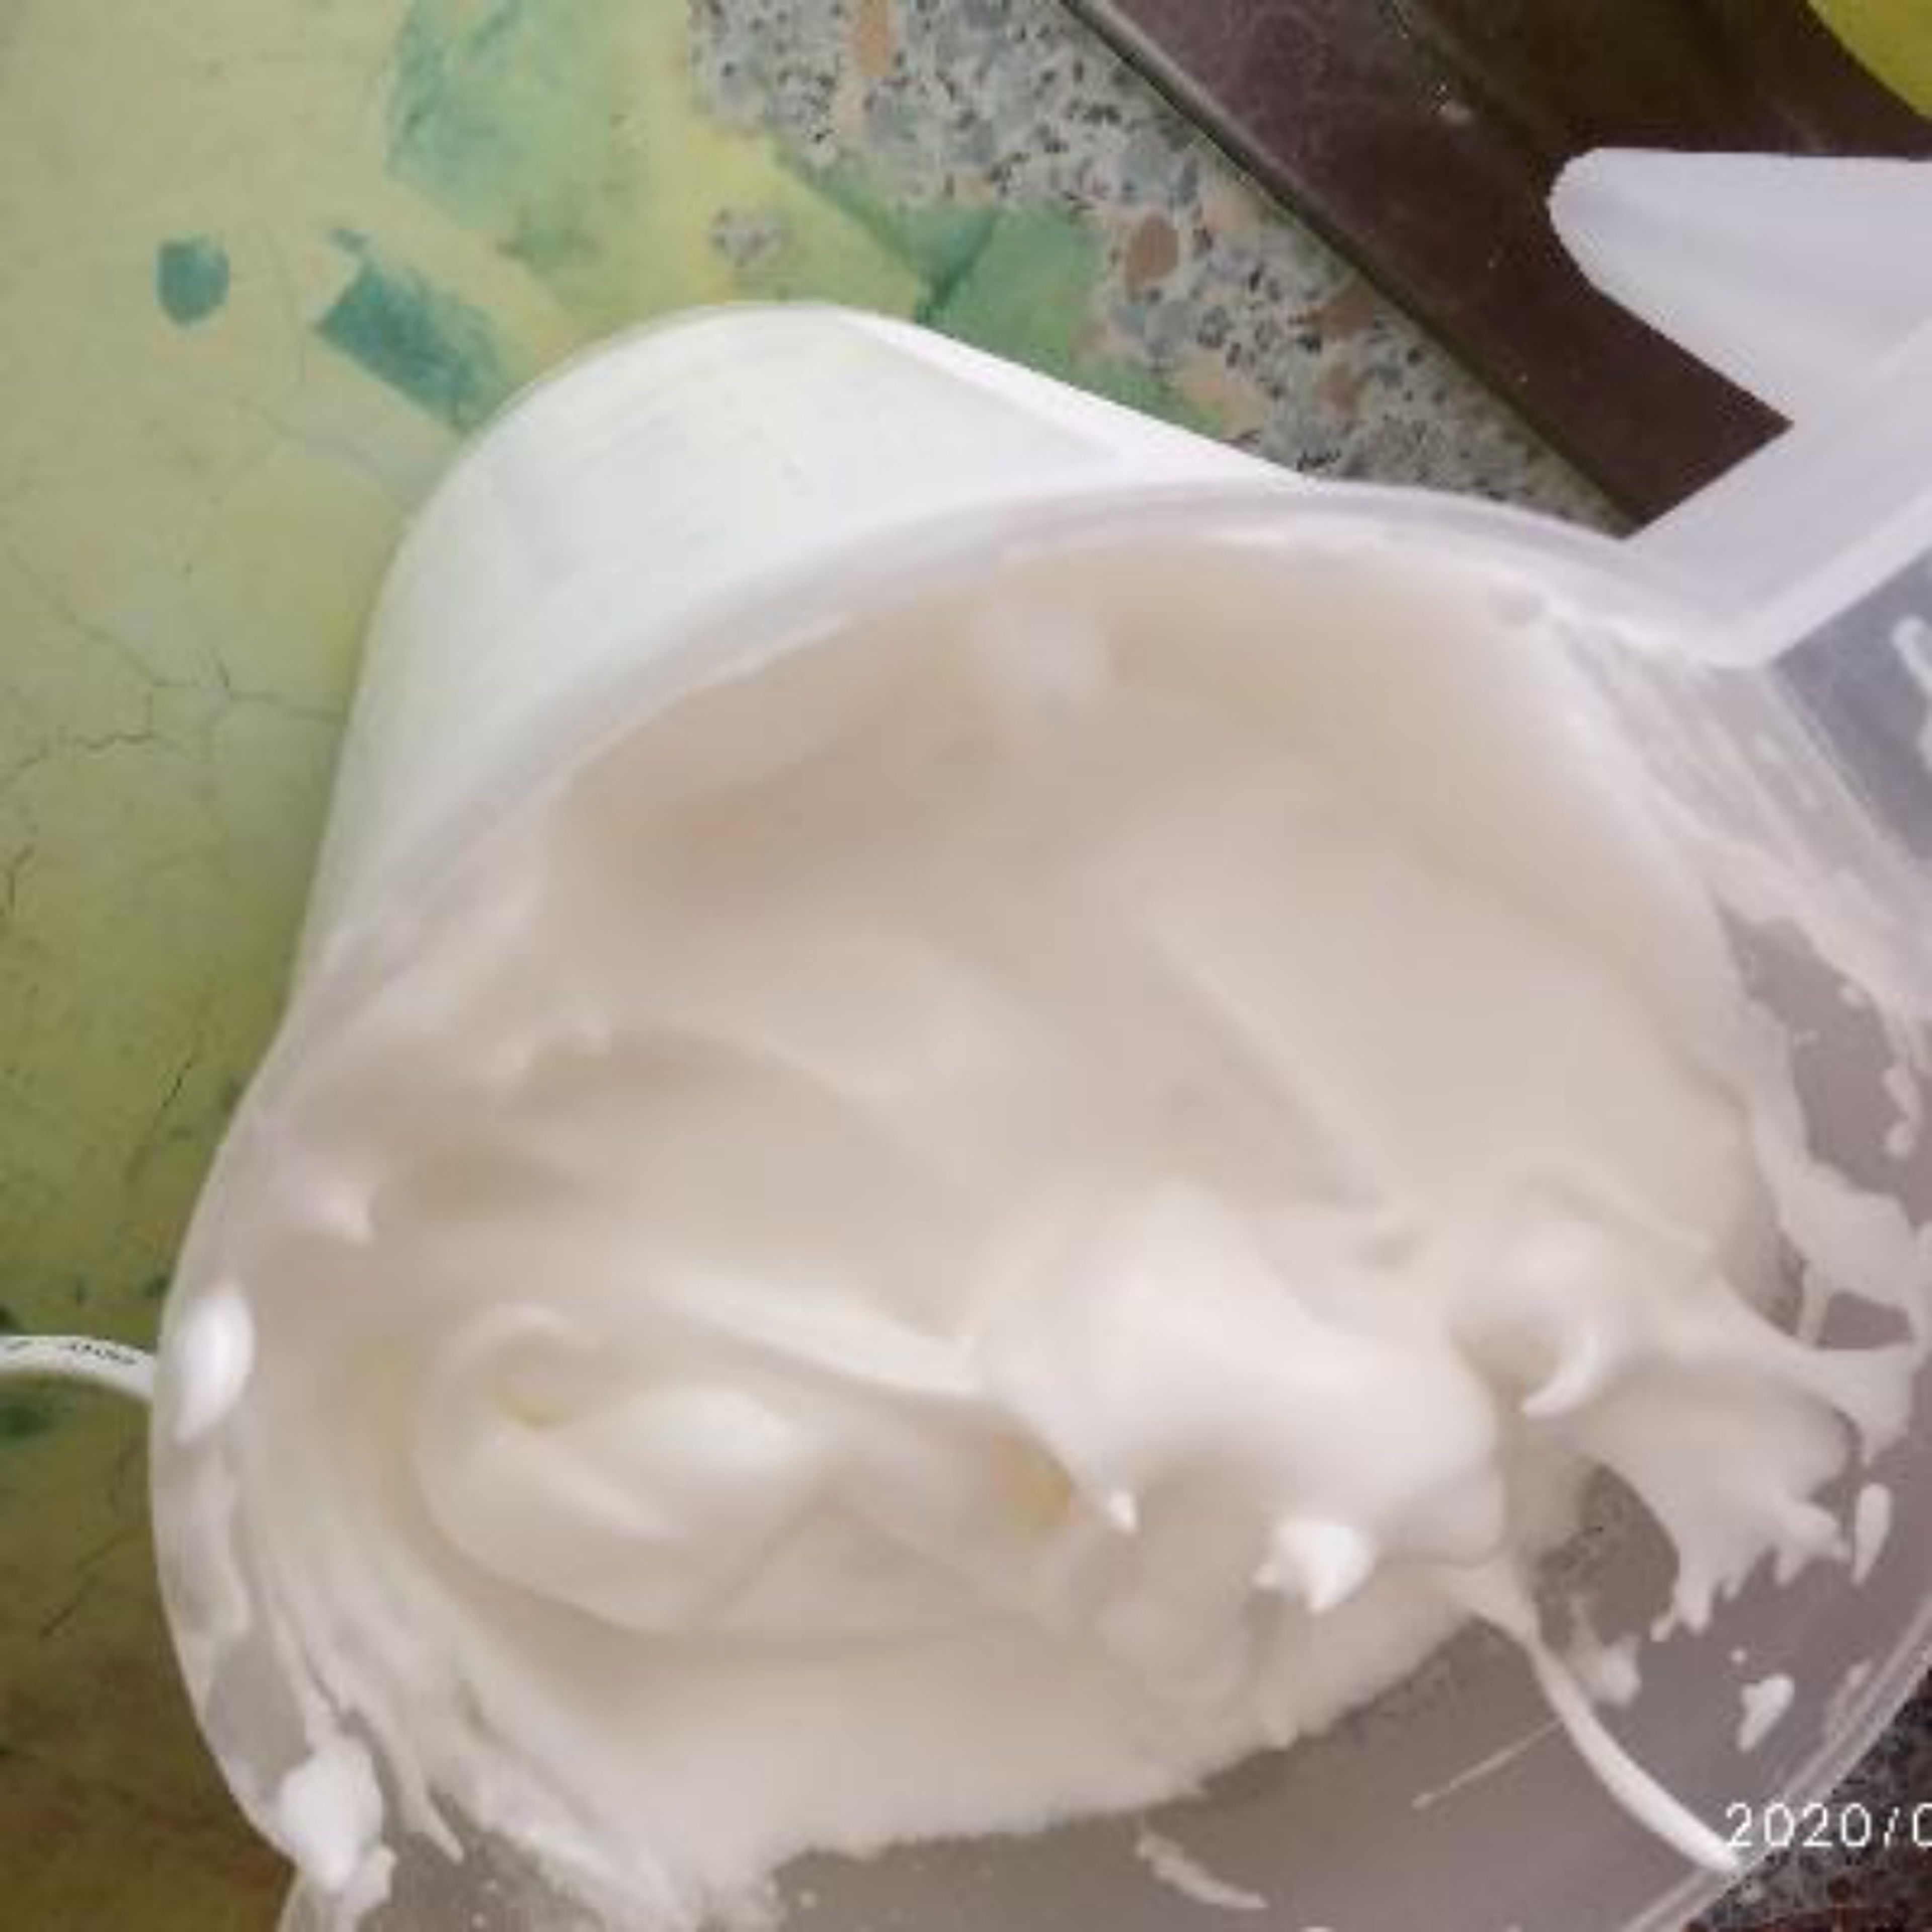 Make egg white foam